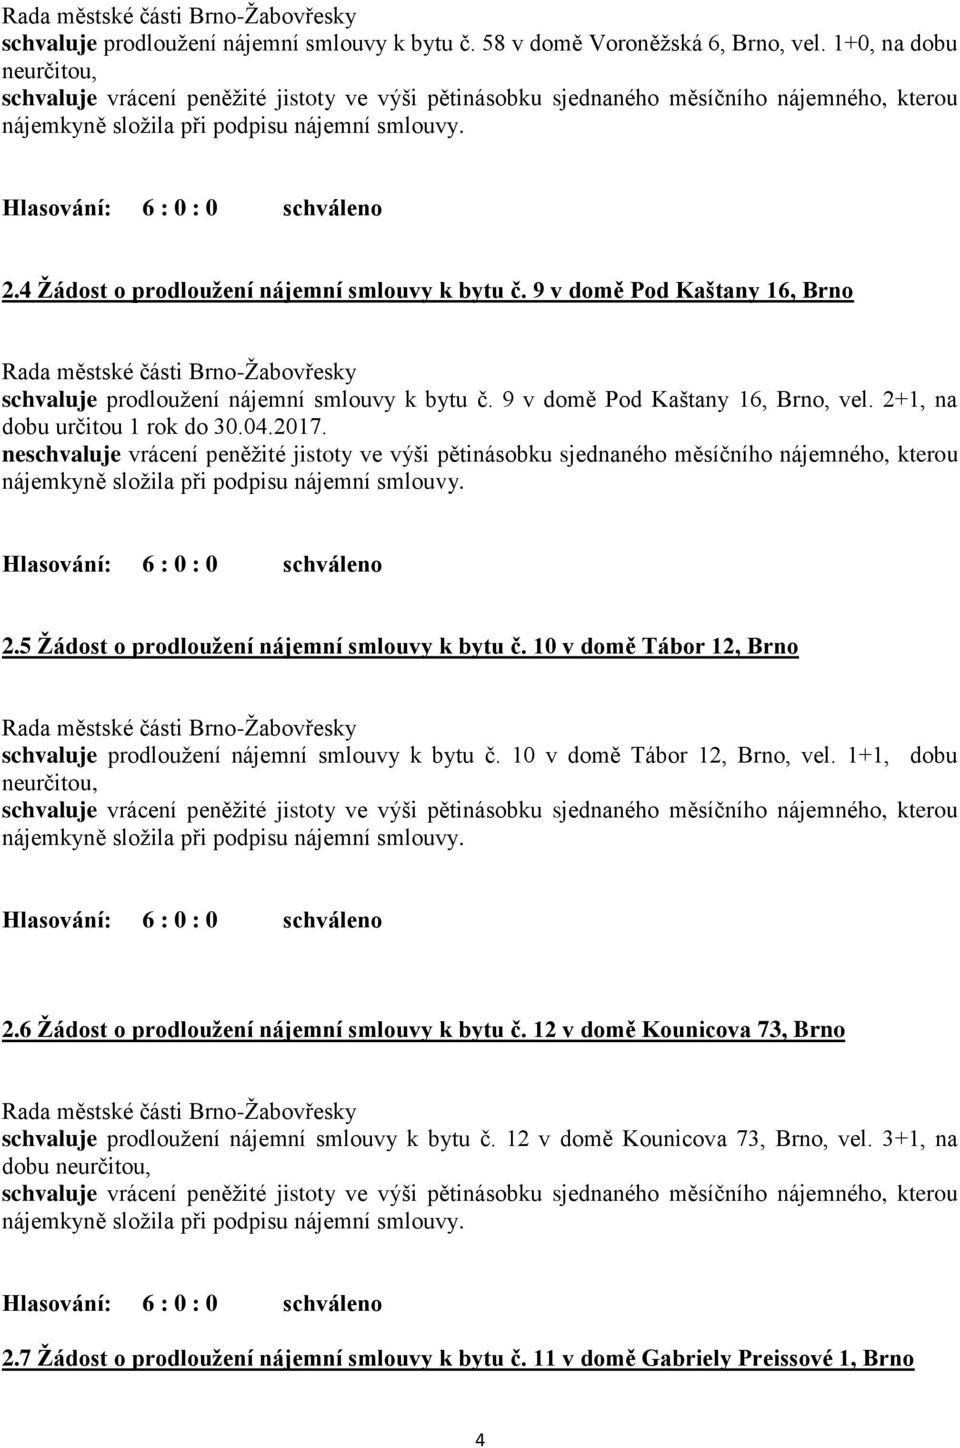 Zápis Žádost o prodloužení nájemní smlouvy k bytu č. 10 v domě Kounicova  71, Brno, po přechodu - PDF Free Download